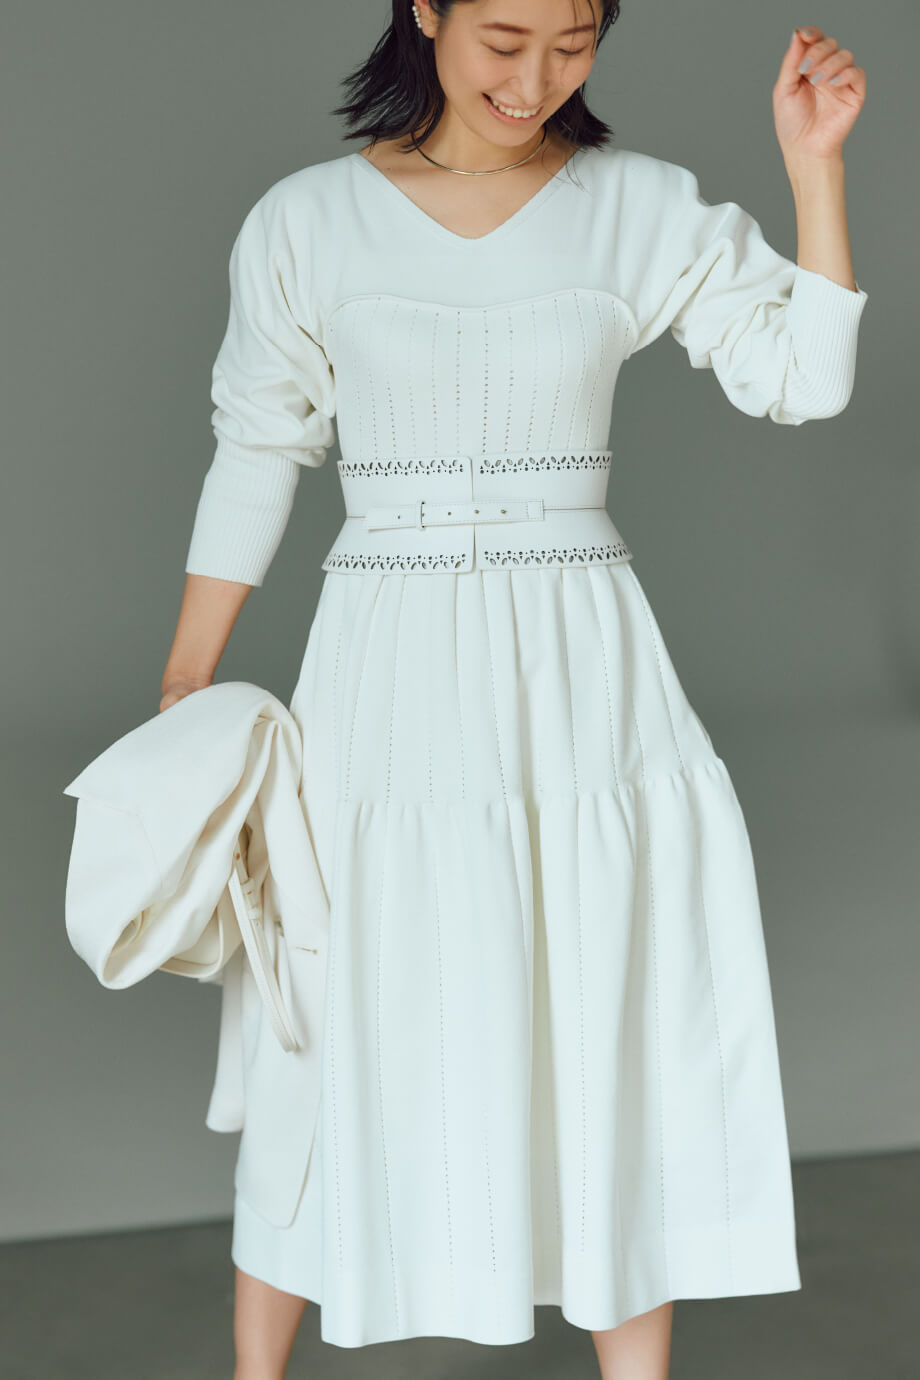 白いドレスの女性モデル画像